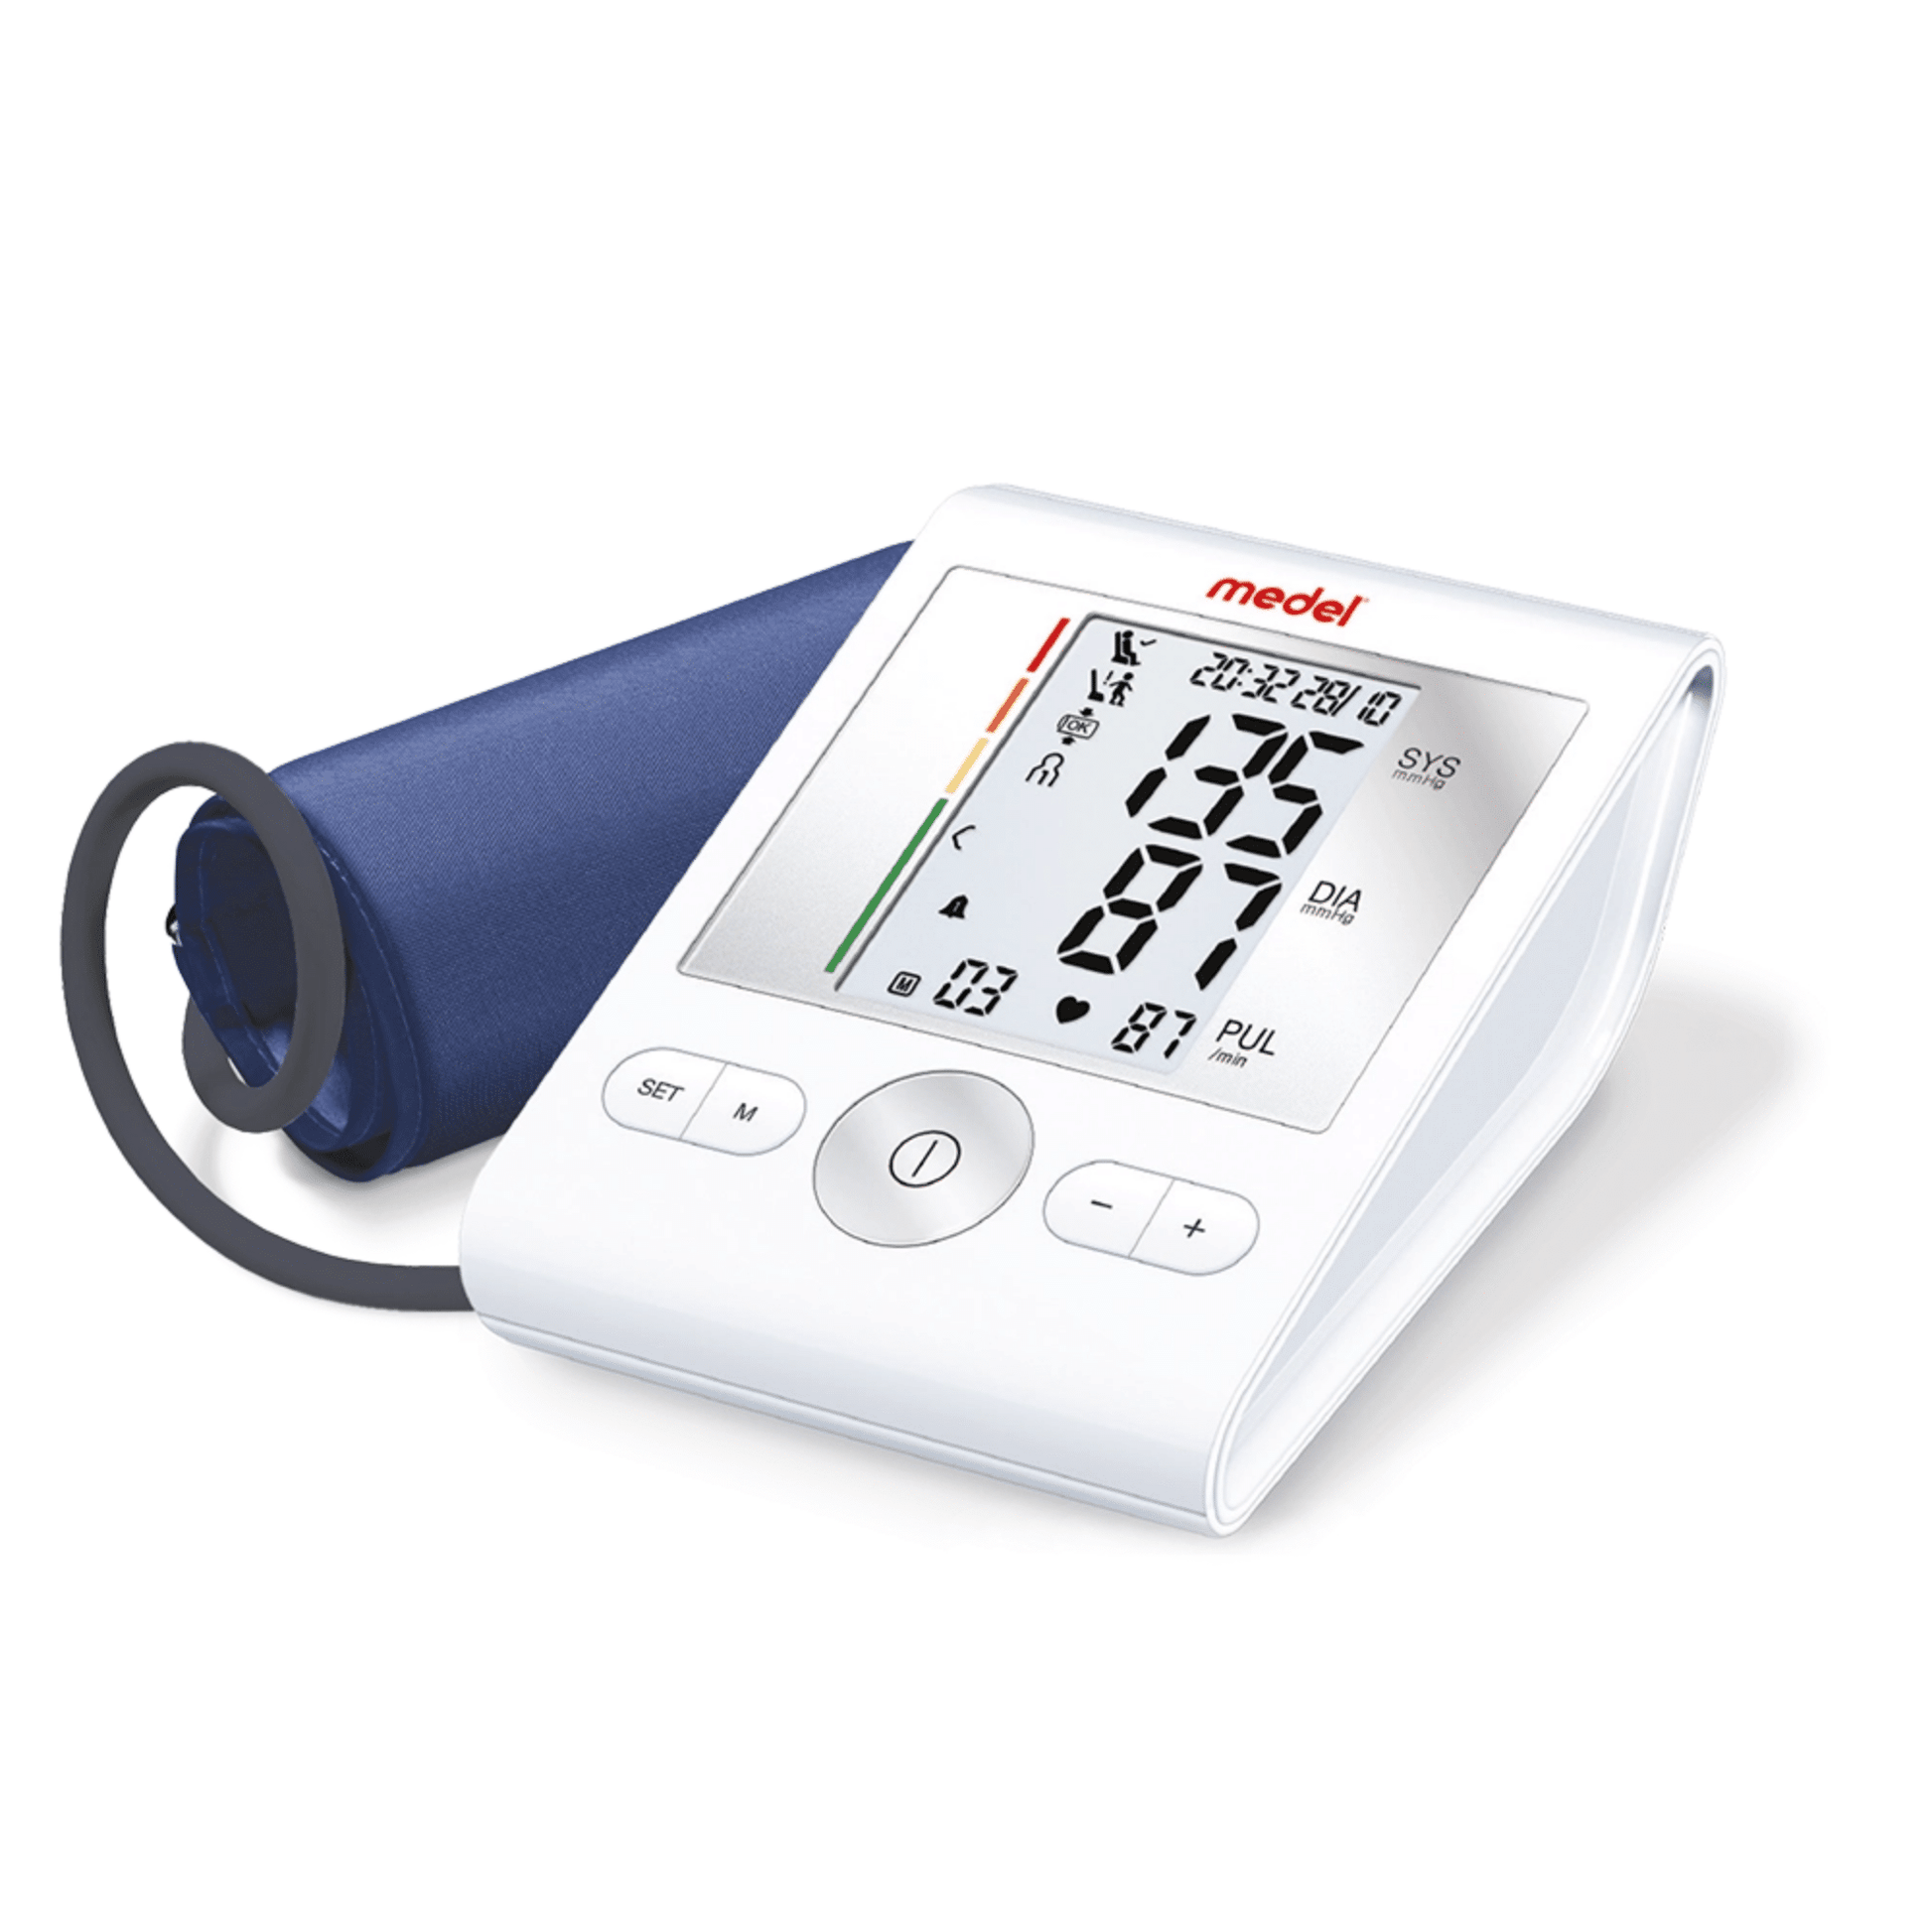 Digitales Blutdruckmessgerät mit angeschlossener blauer Manschette, das systolische, diastolische und Pulswerte auf weißem Hintergrund anzeigt. Dieses Medel Sense Blutdruckmessgerät verfügt auch über HSD von Beurer GmbH.